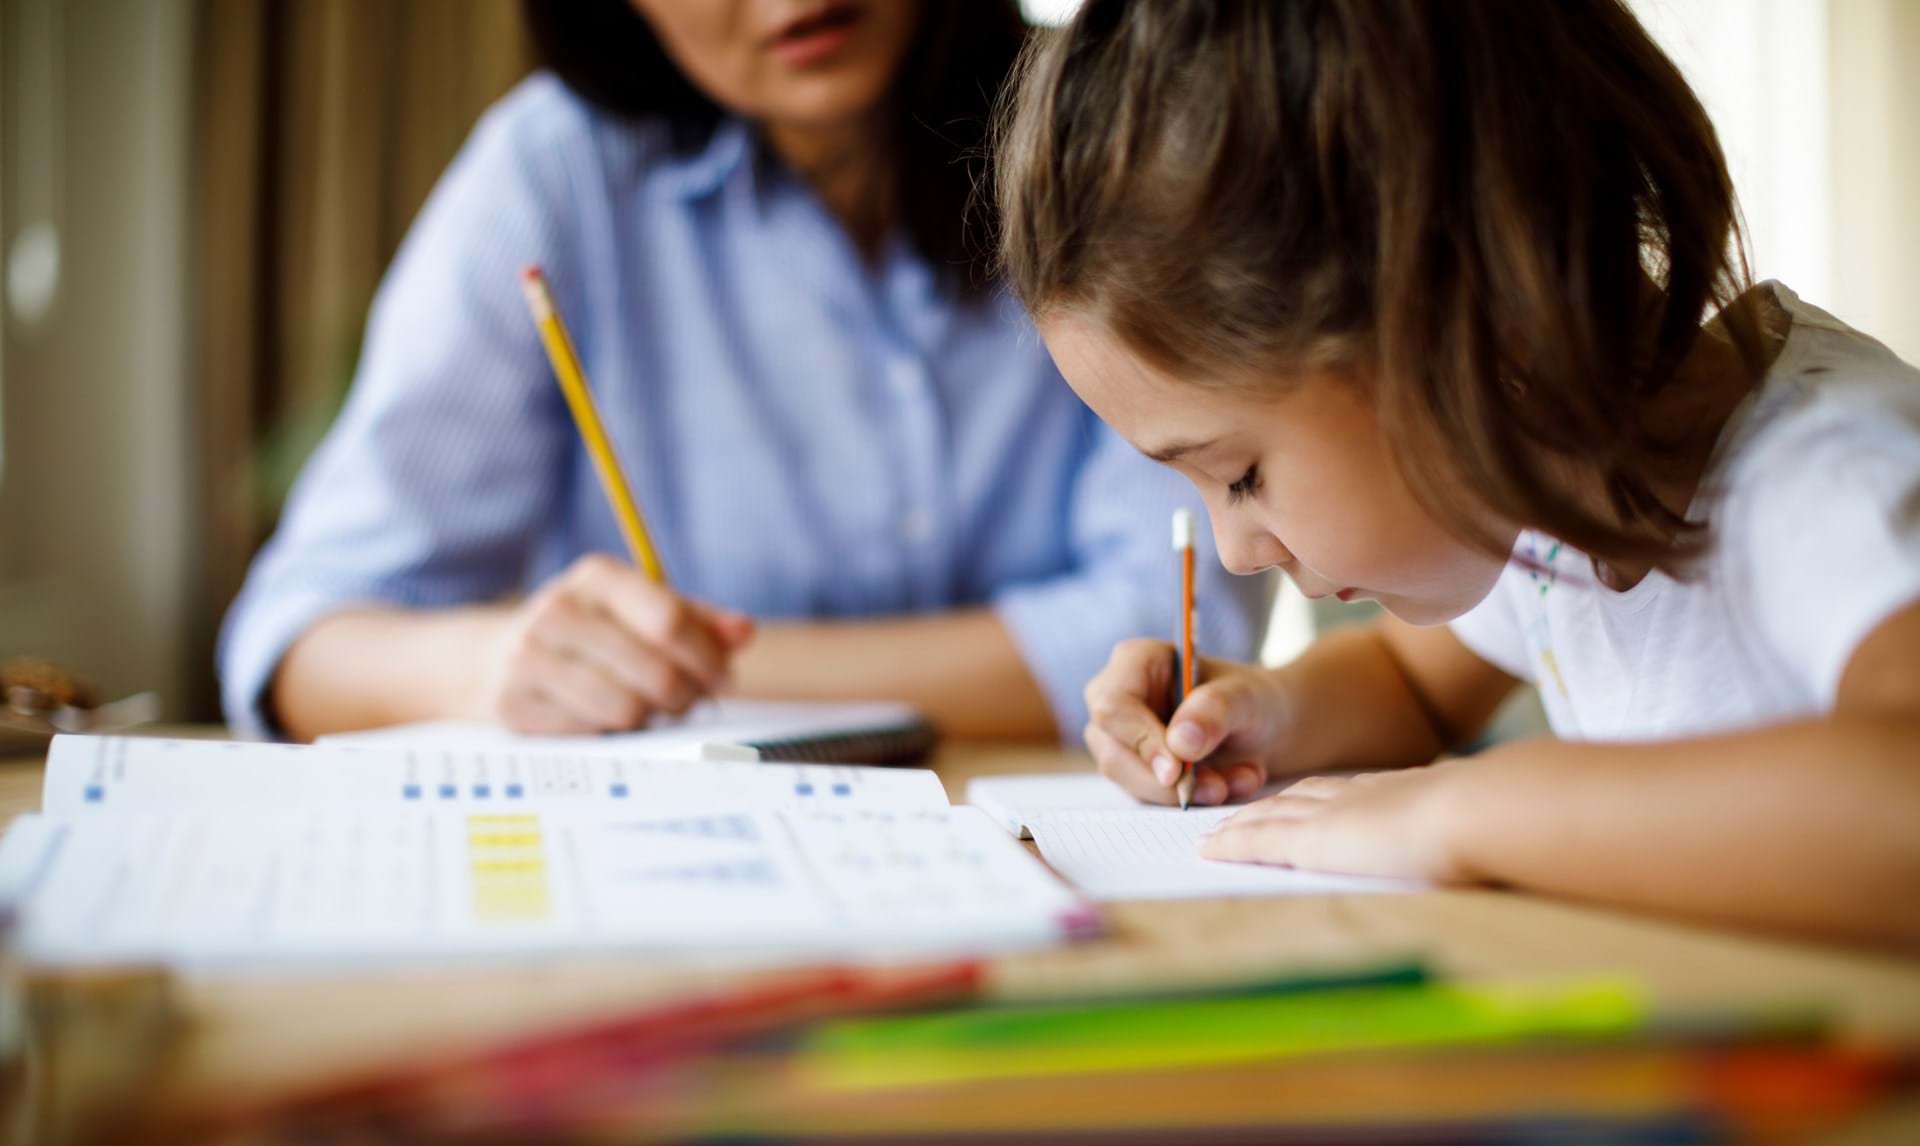 kubiske er mere end lektier Find her 7 gode råd, hvis du overvejer privat lektiehjælp til dit barn -  ALT.dk